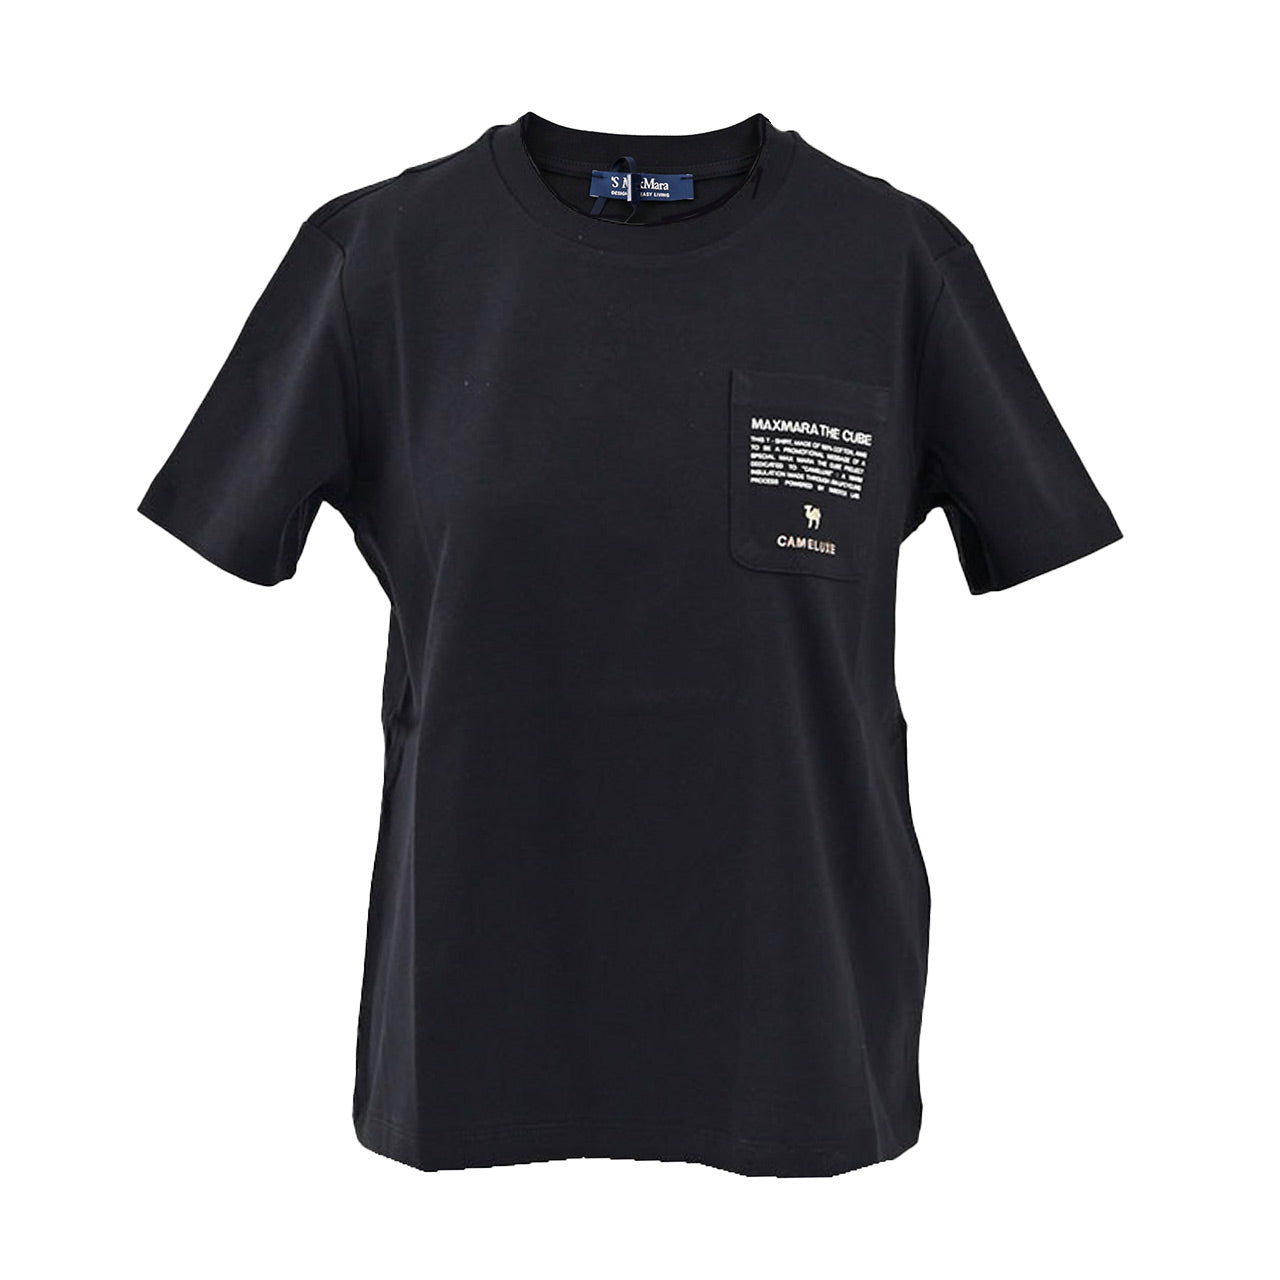 【新品】Max Mara マックスマーラー Tシャツ ブラック Sサイズブラック